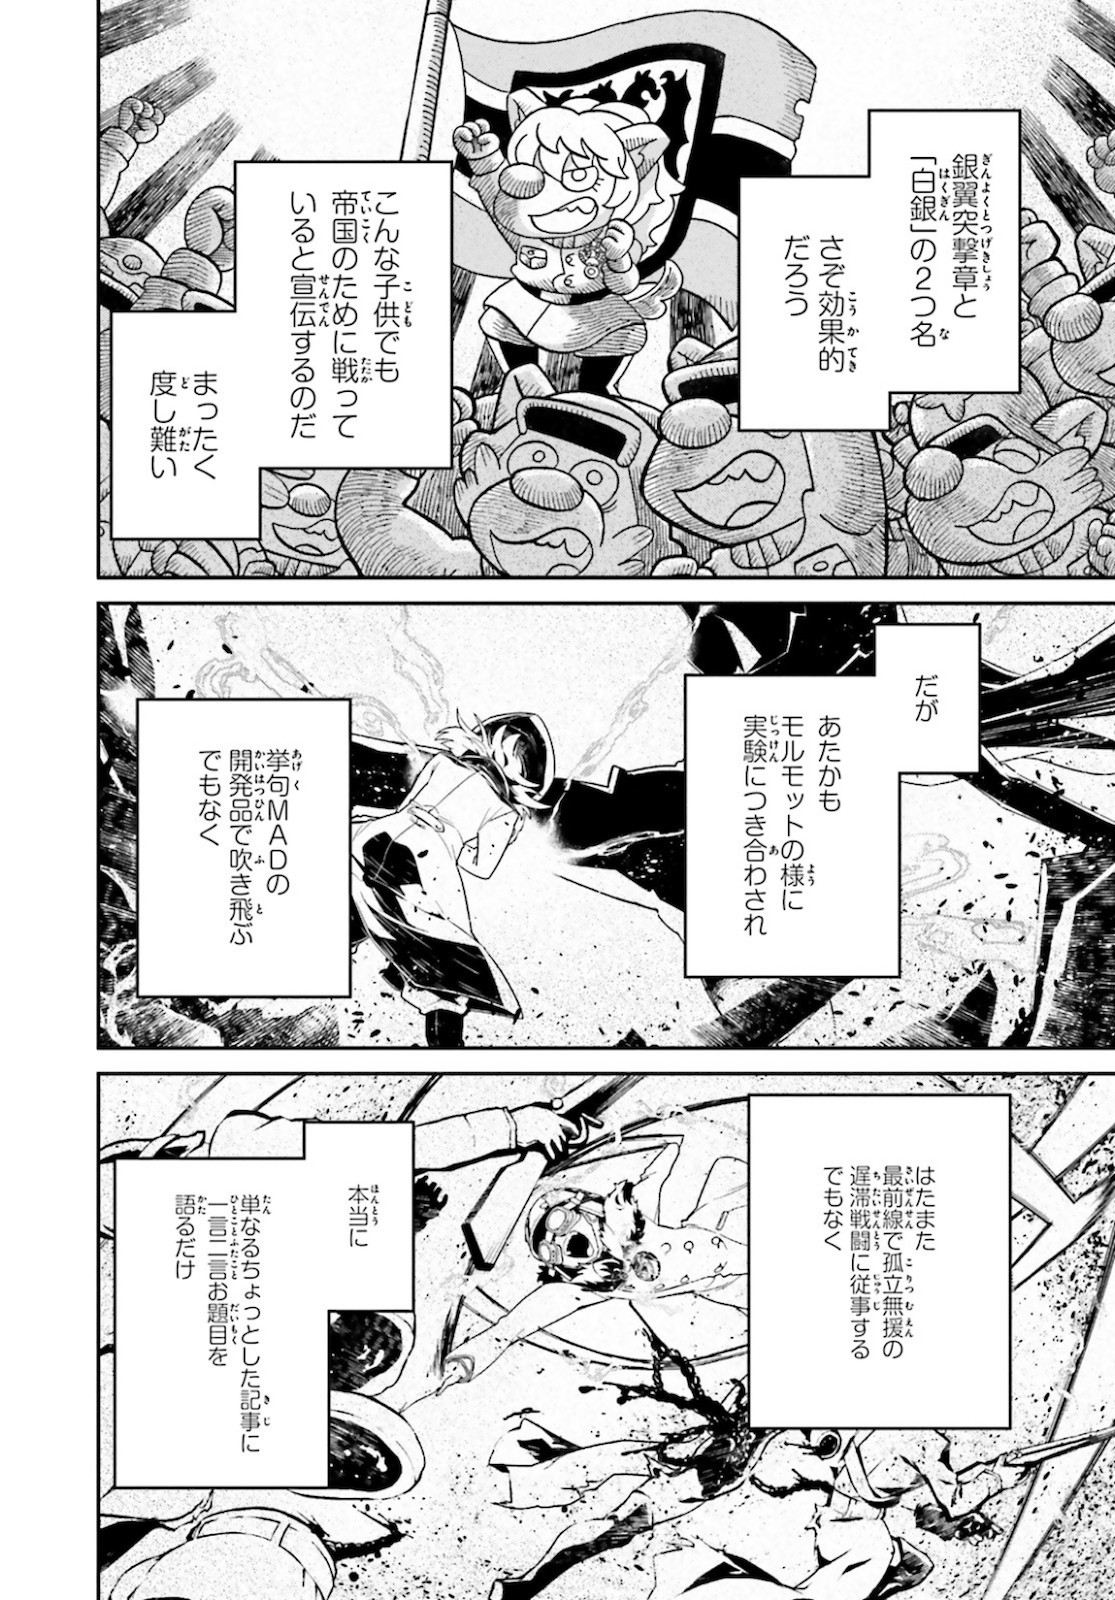 Youjo Senki Chapter 63 7 Page 8 Raw Sen Manga